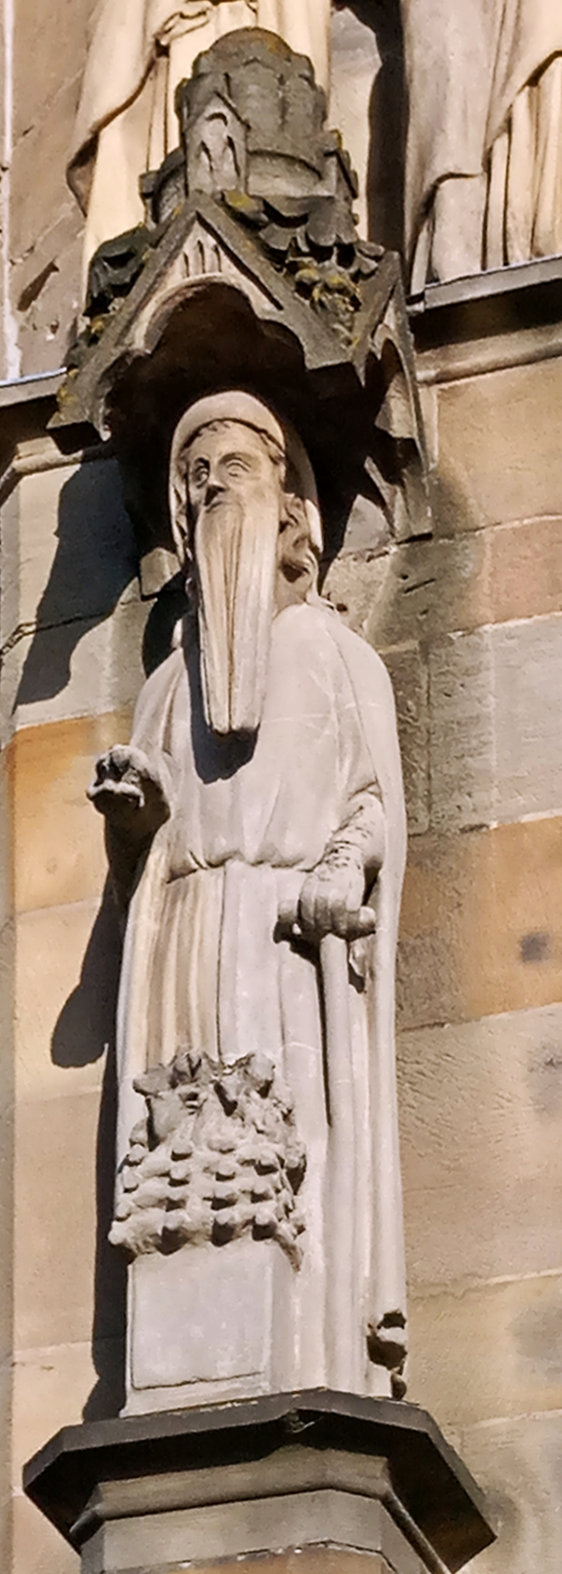 sveti Simeon iz Trierja - diakon, menih, romar in puščavnik